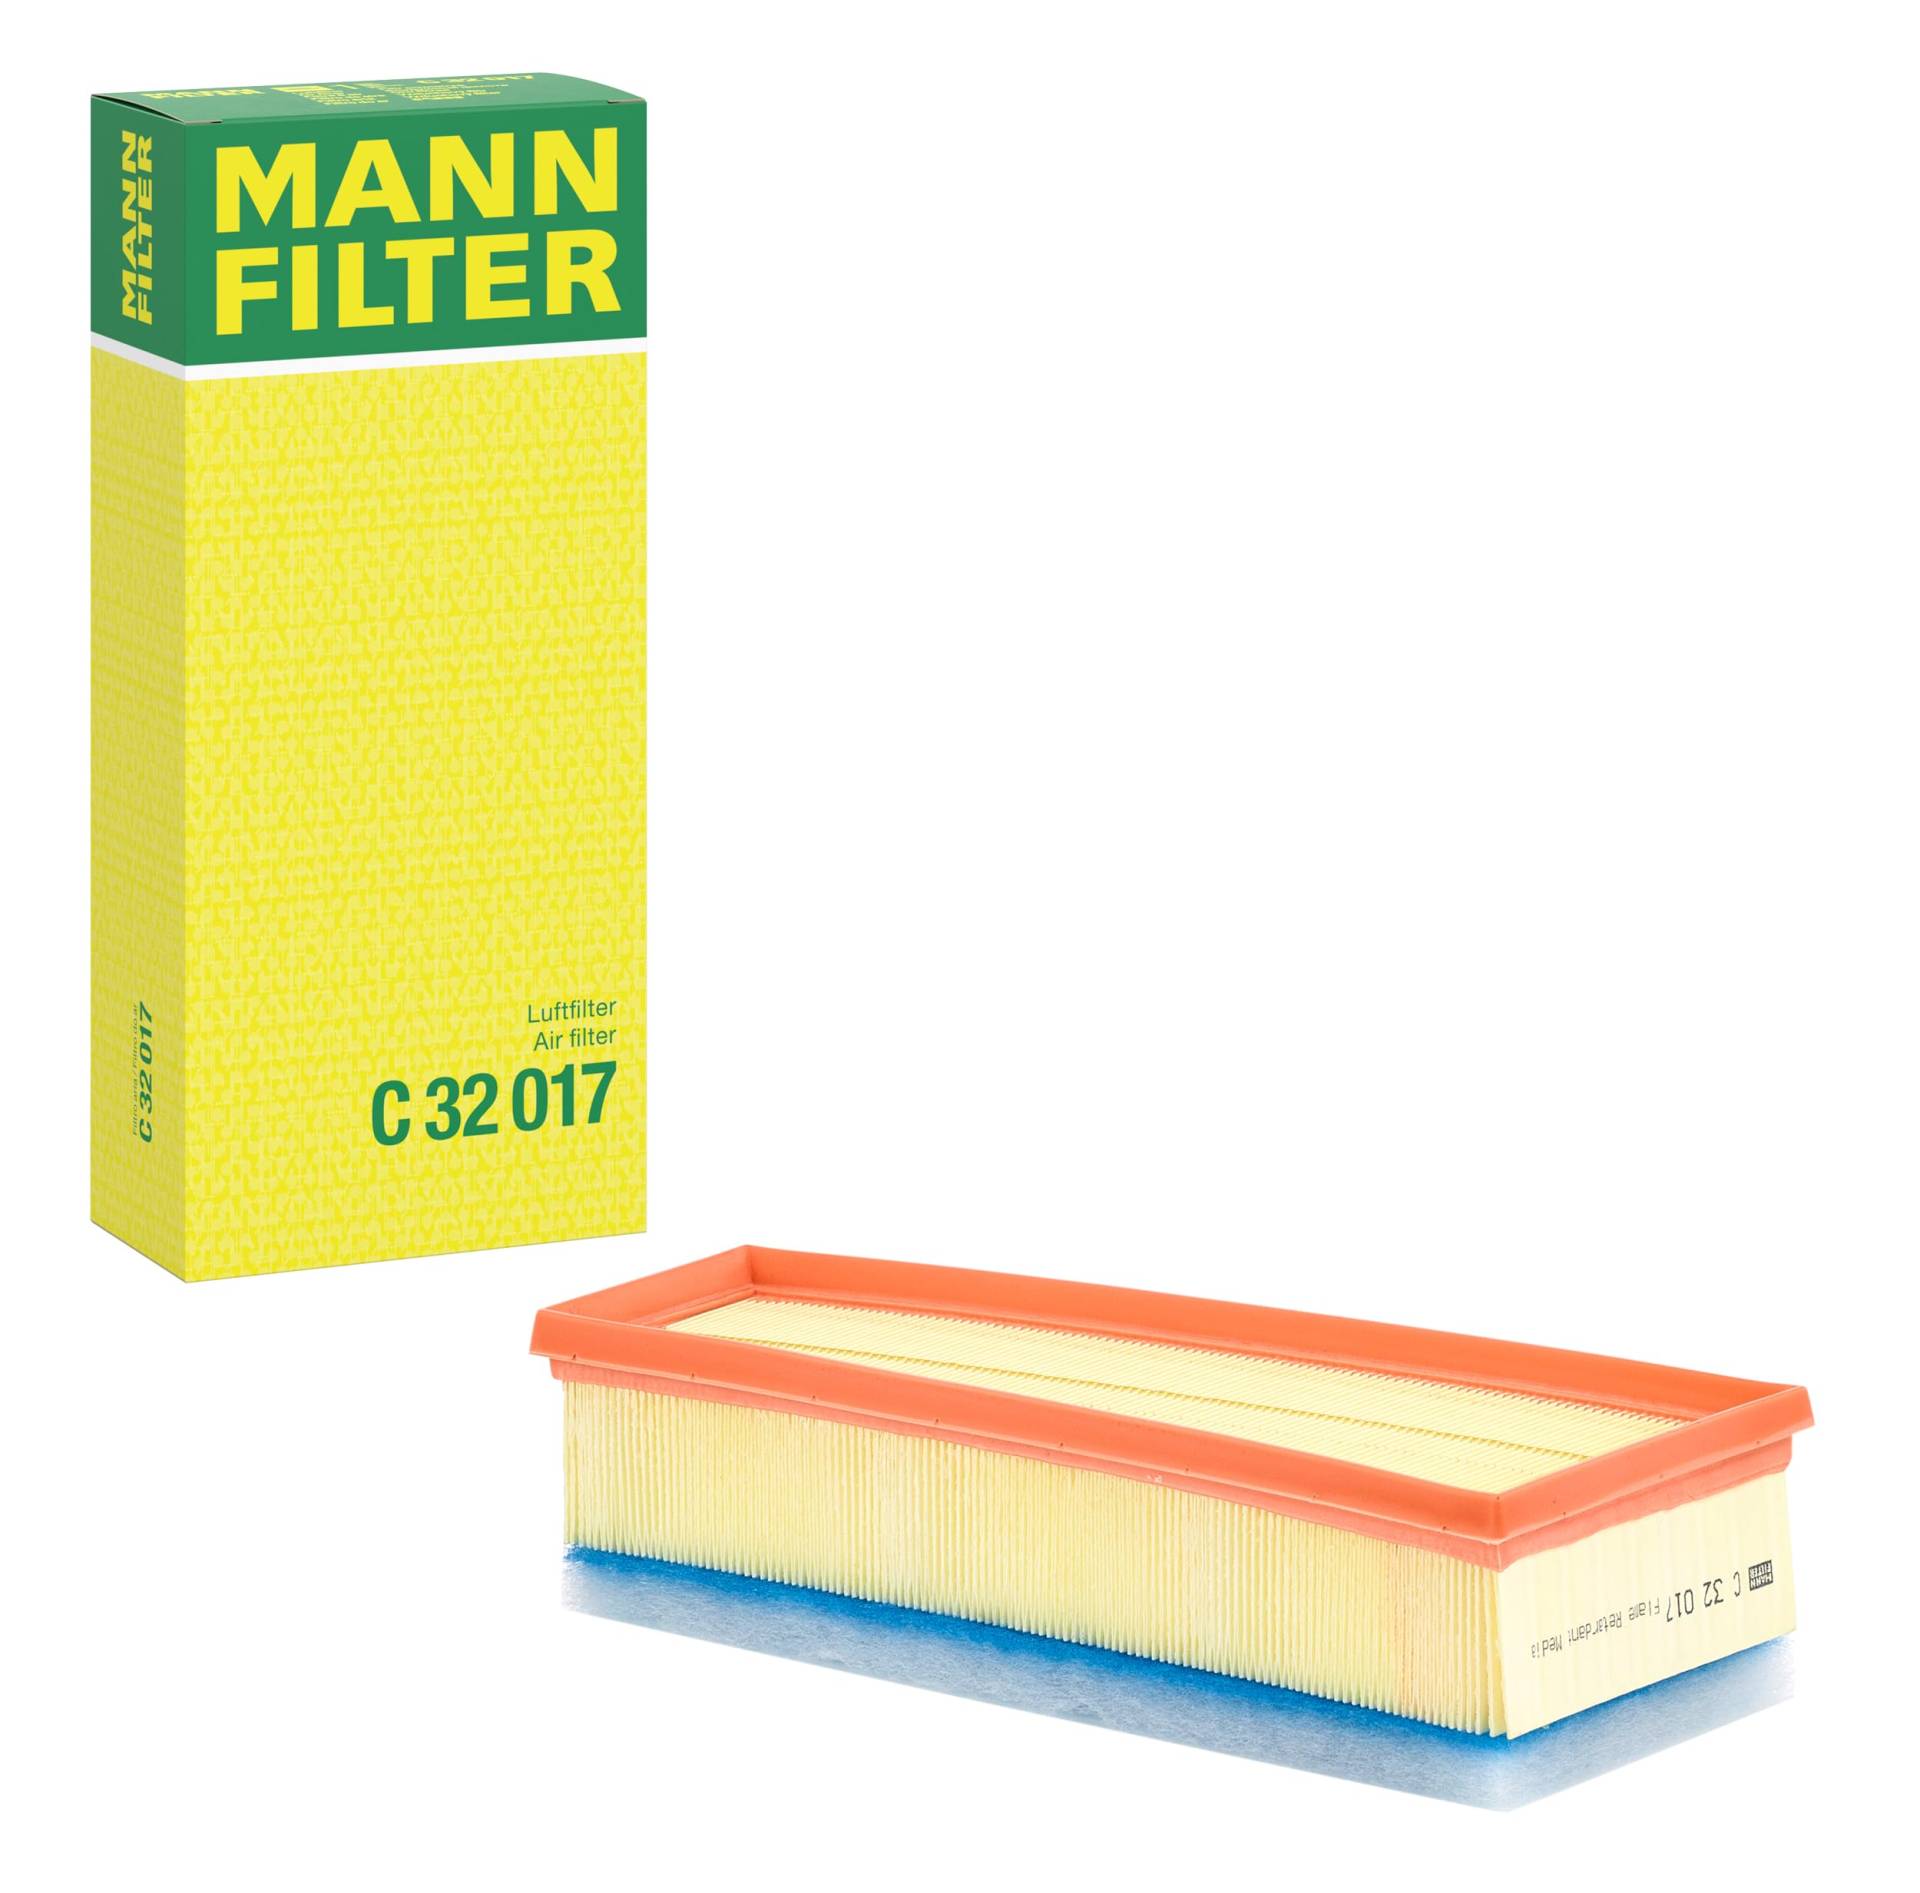 Mann-filter C 32 017 - Luftfilter von MANN-FILTER